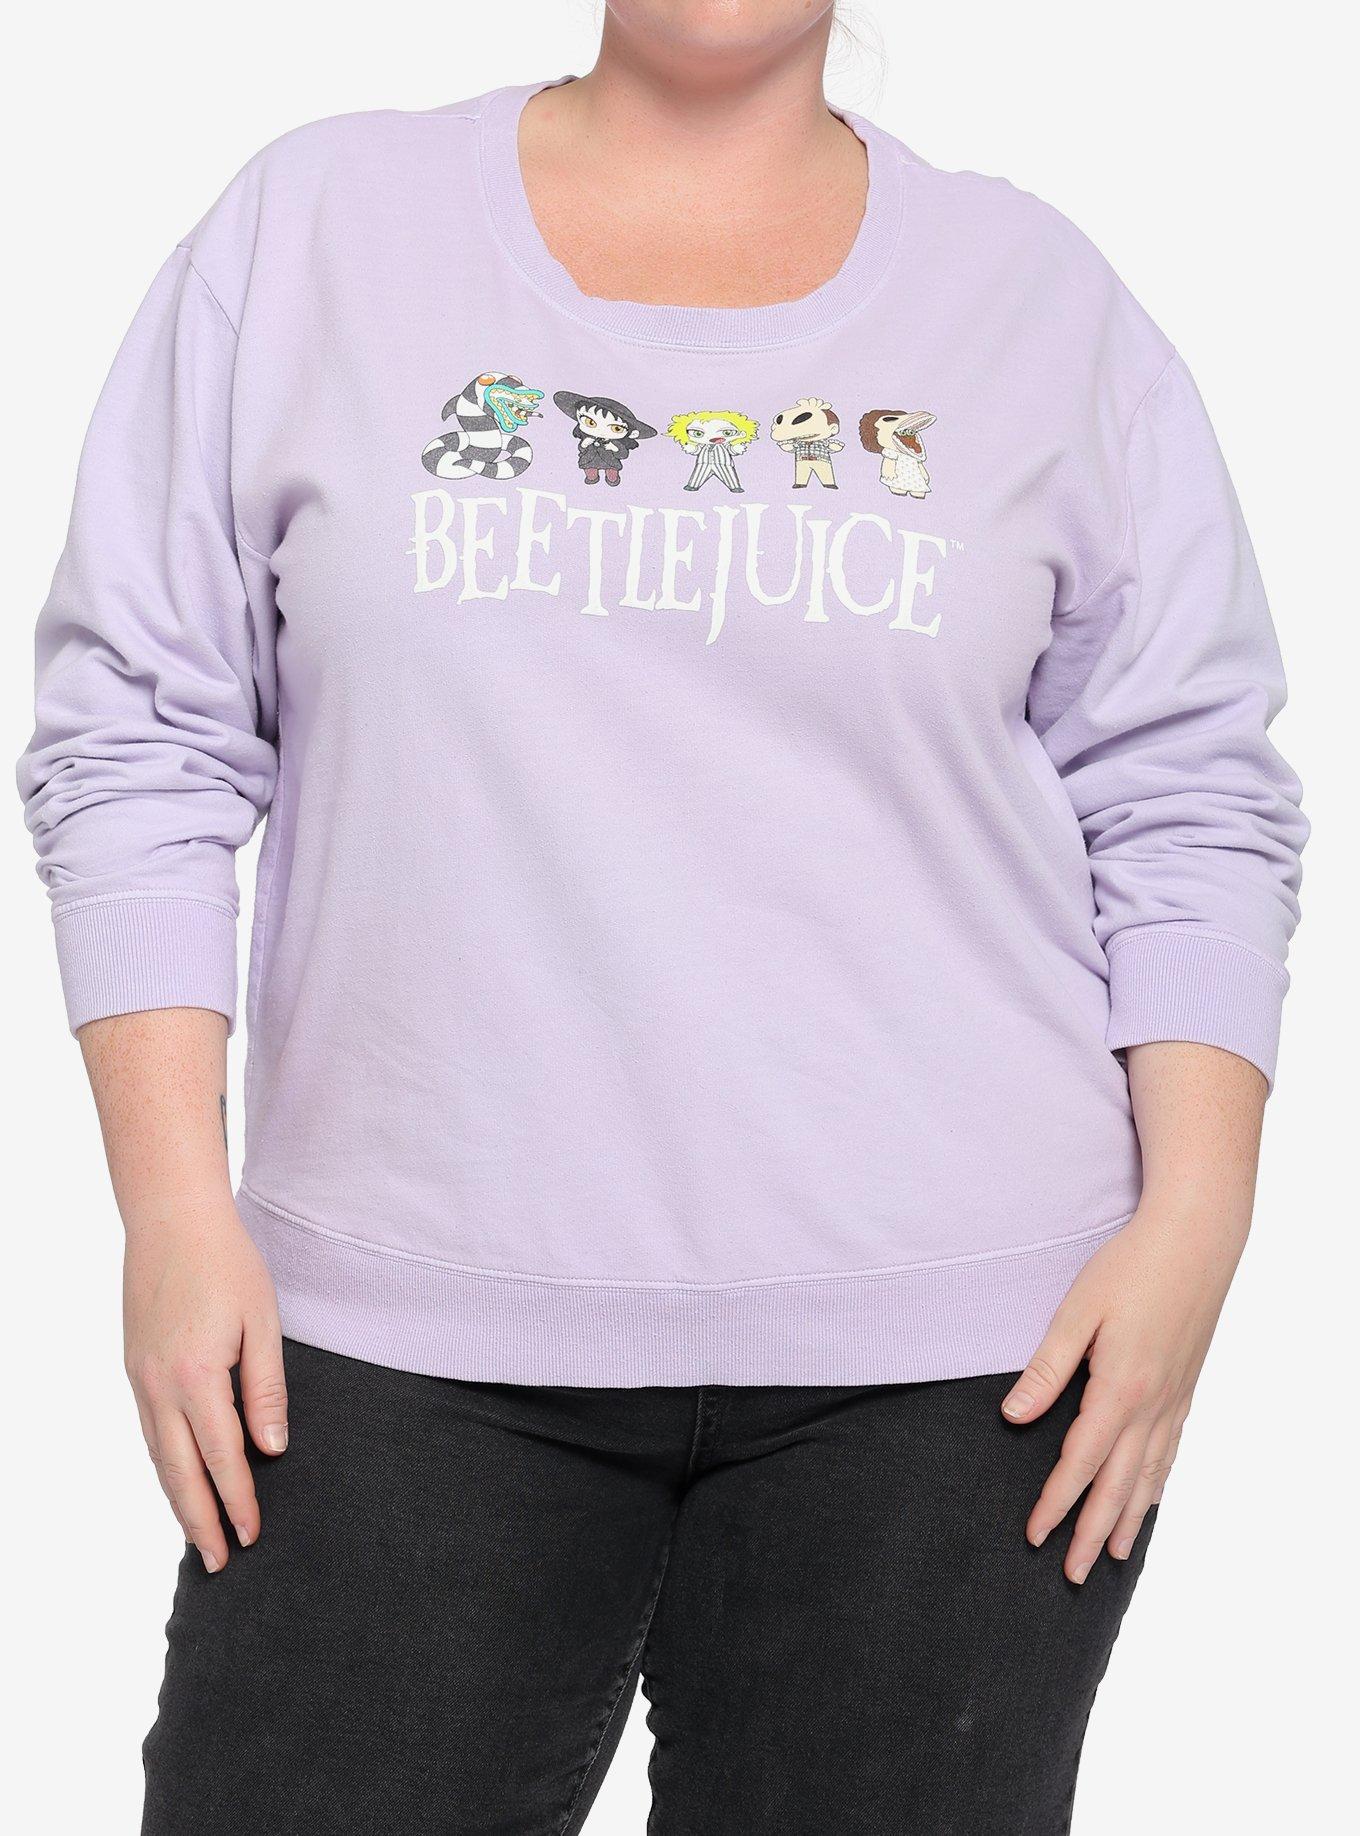 Beetlejuice Chibi Lavender Girls Sweatshirt Plus Size, MULTI, hi-res